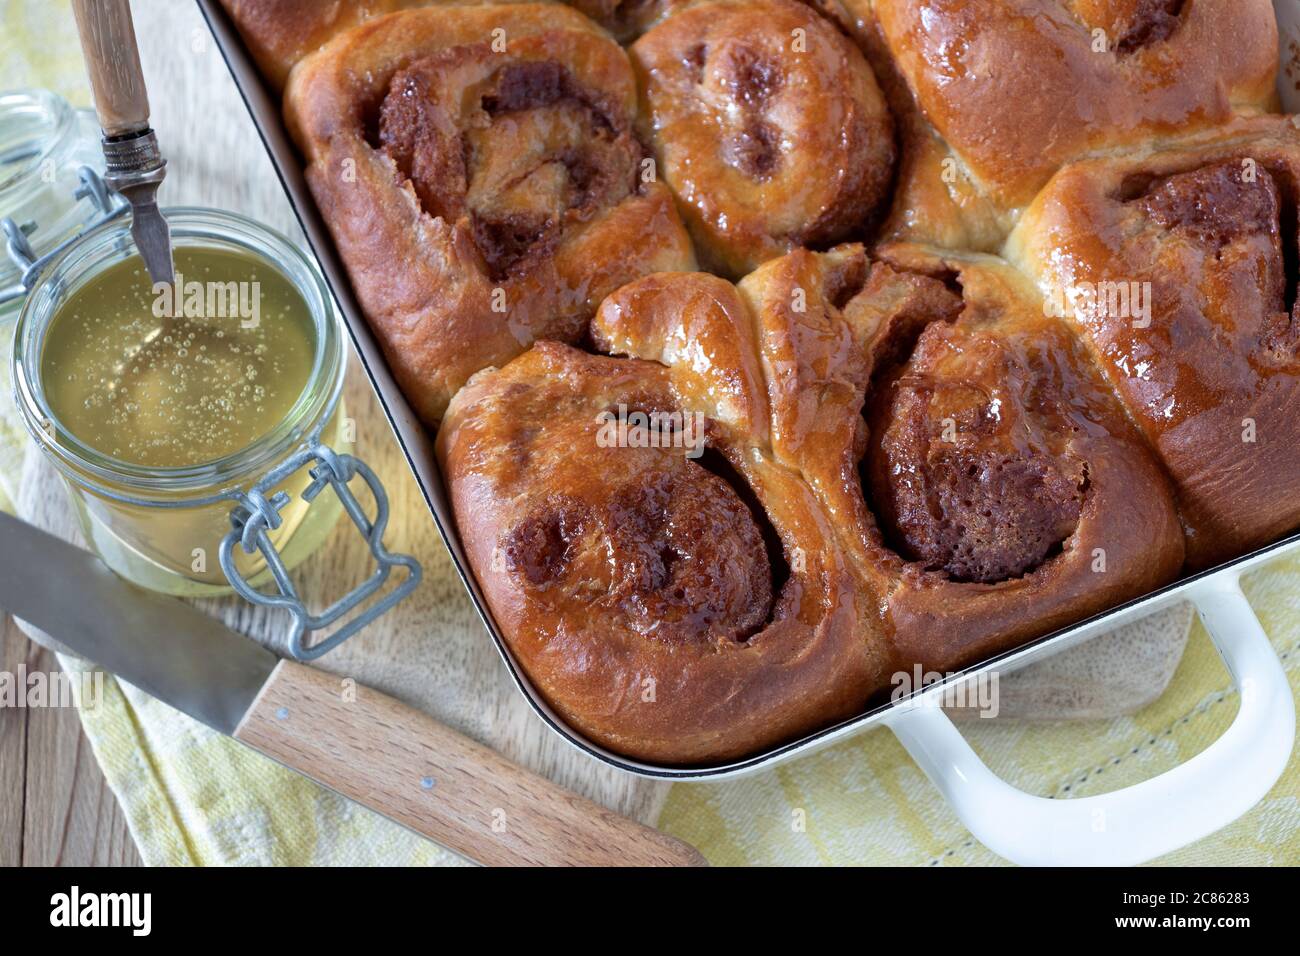 honey yeast cake in baking pan and glass of honey Stock Photo